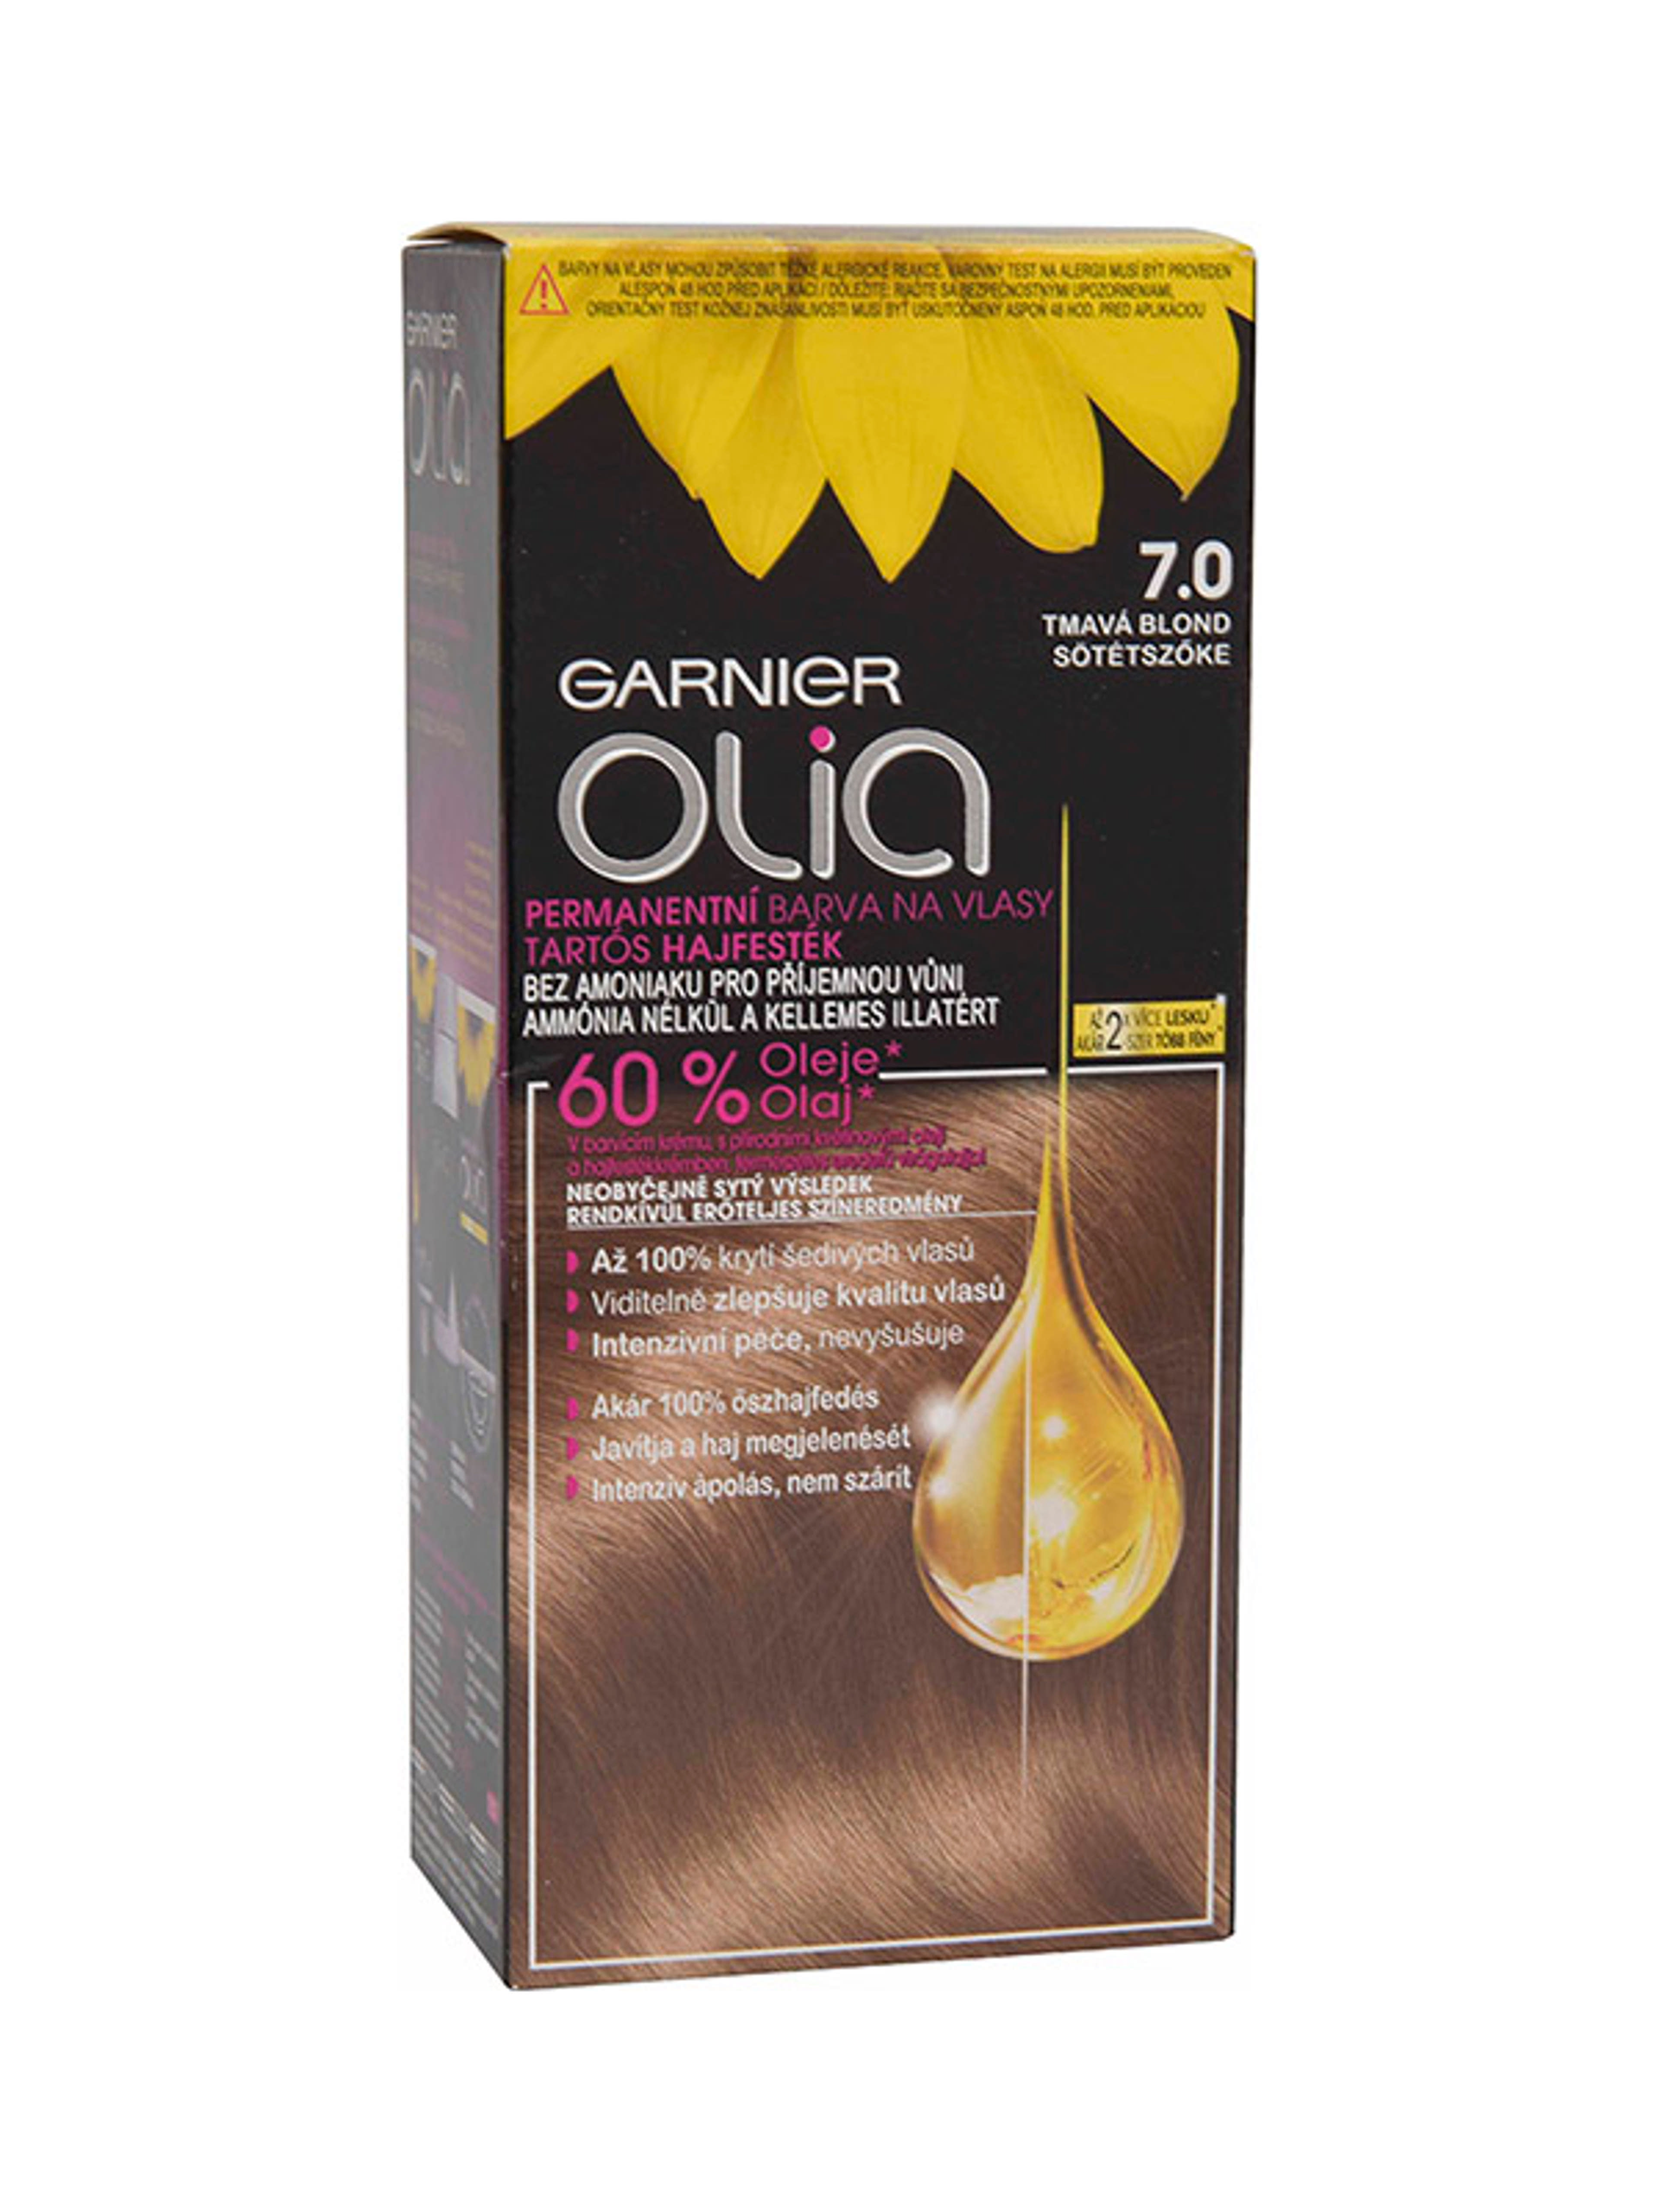 Garnier Olia tartós hajfesték 7.0 Sötétszőke - 1 db